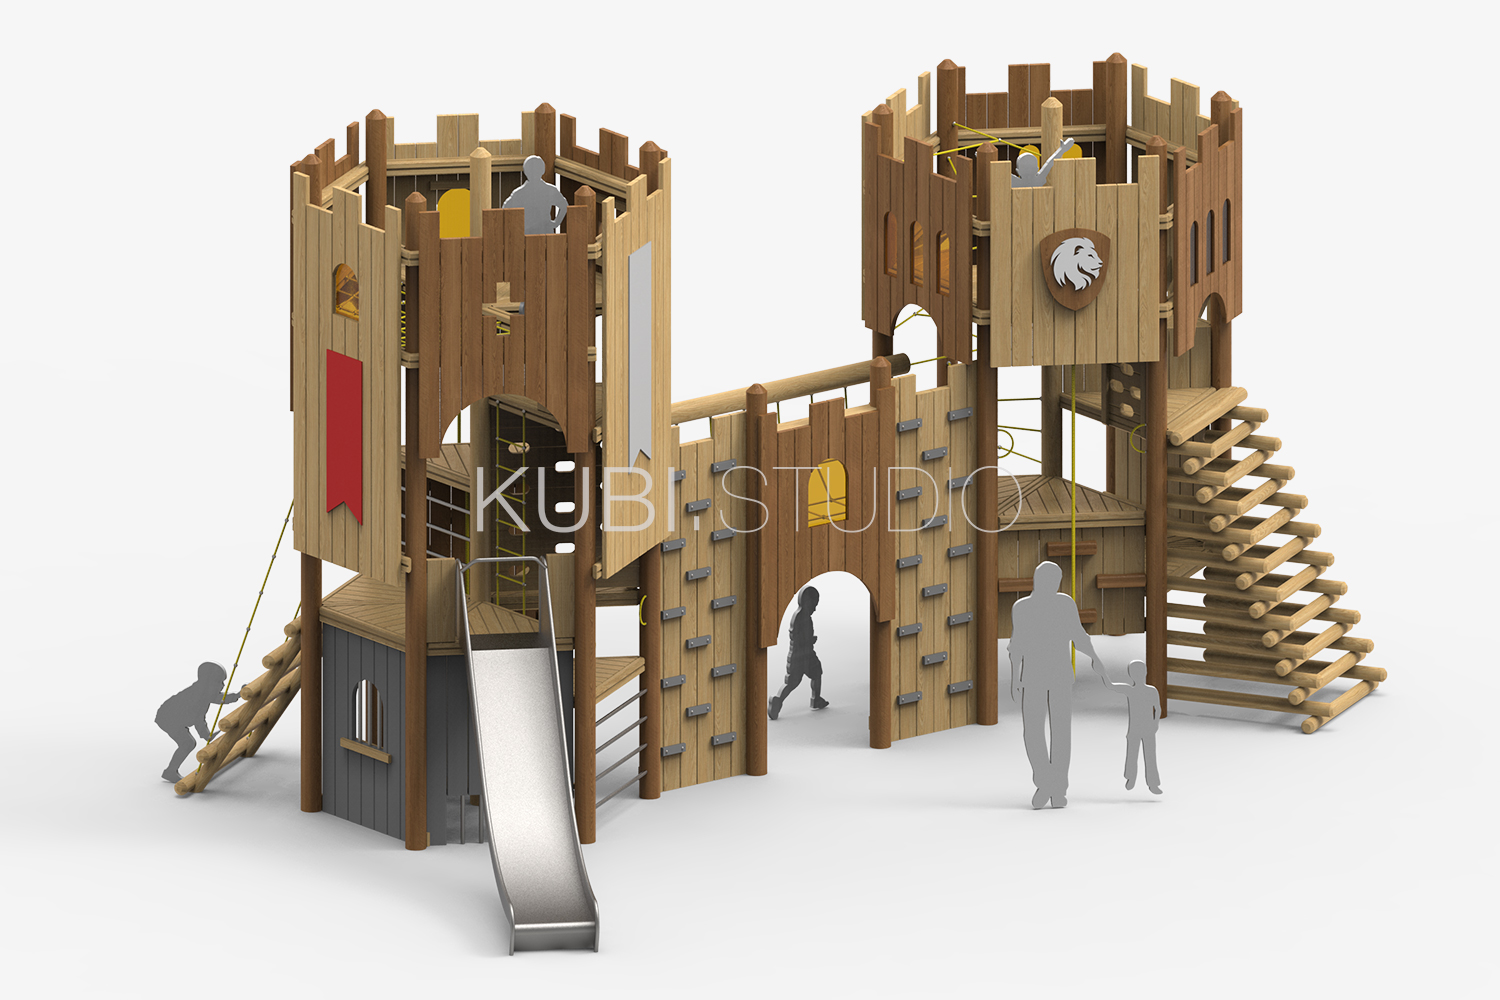 Проектирование детской площадки в виде Арт. объекта - замка